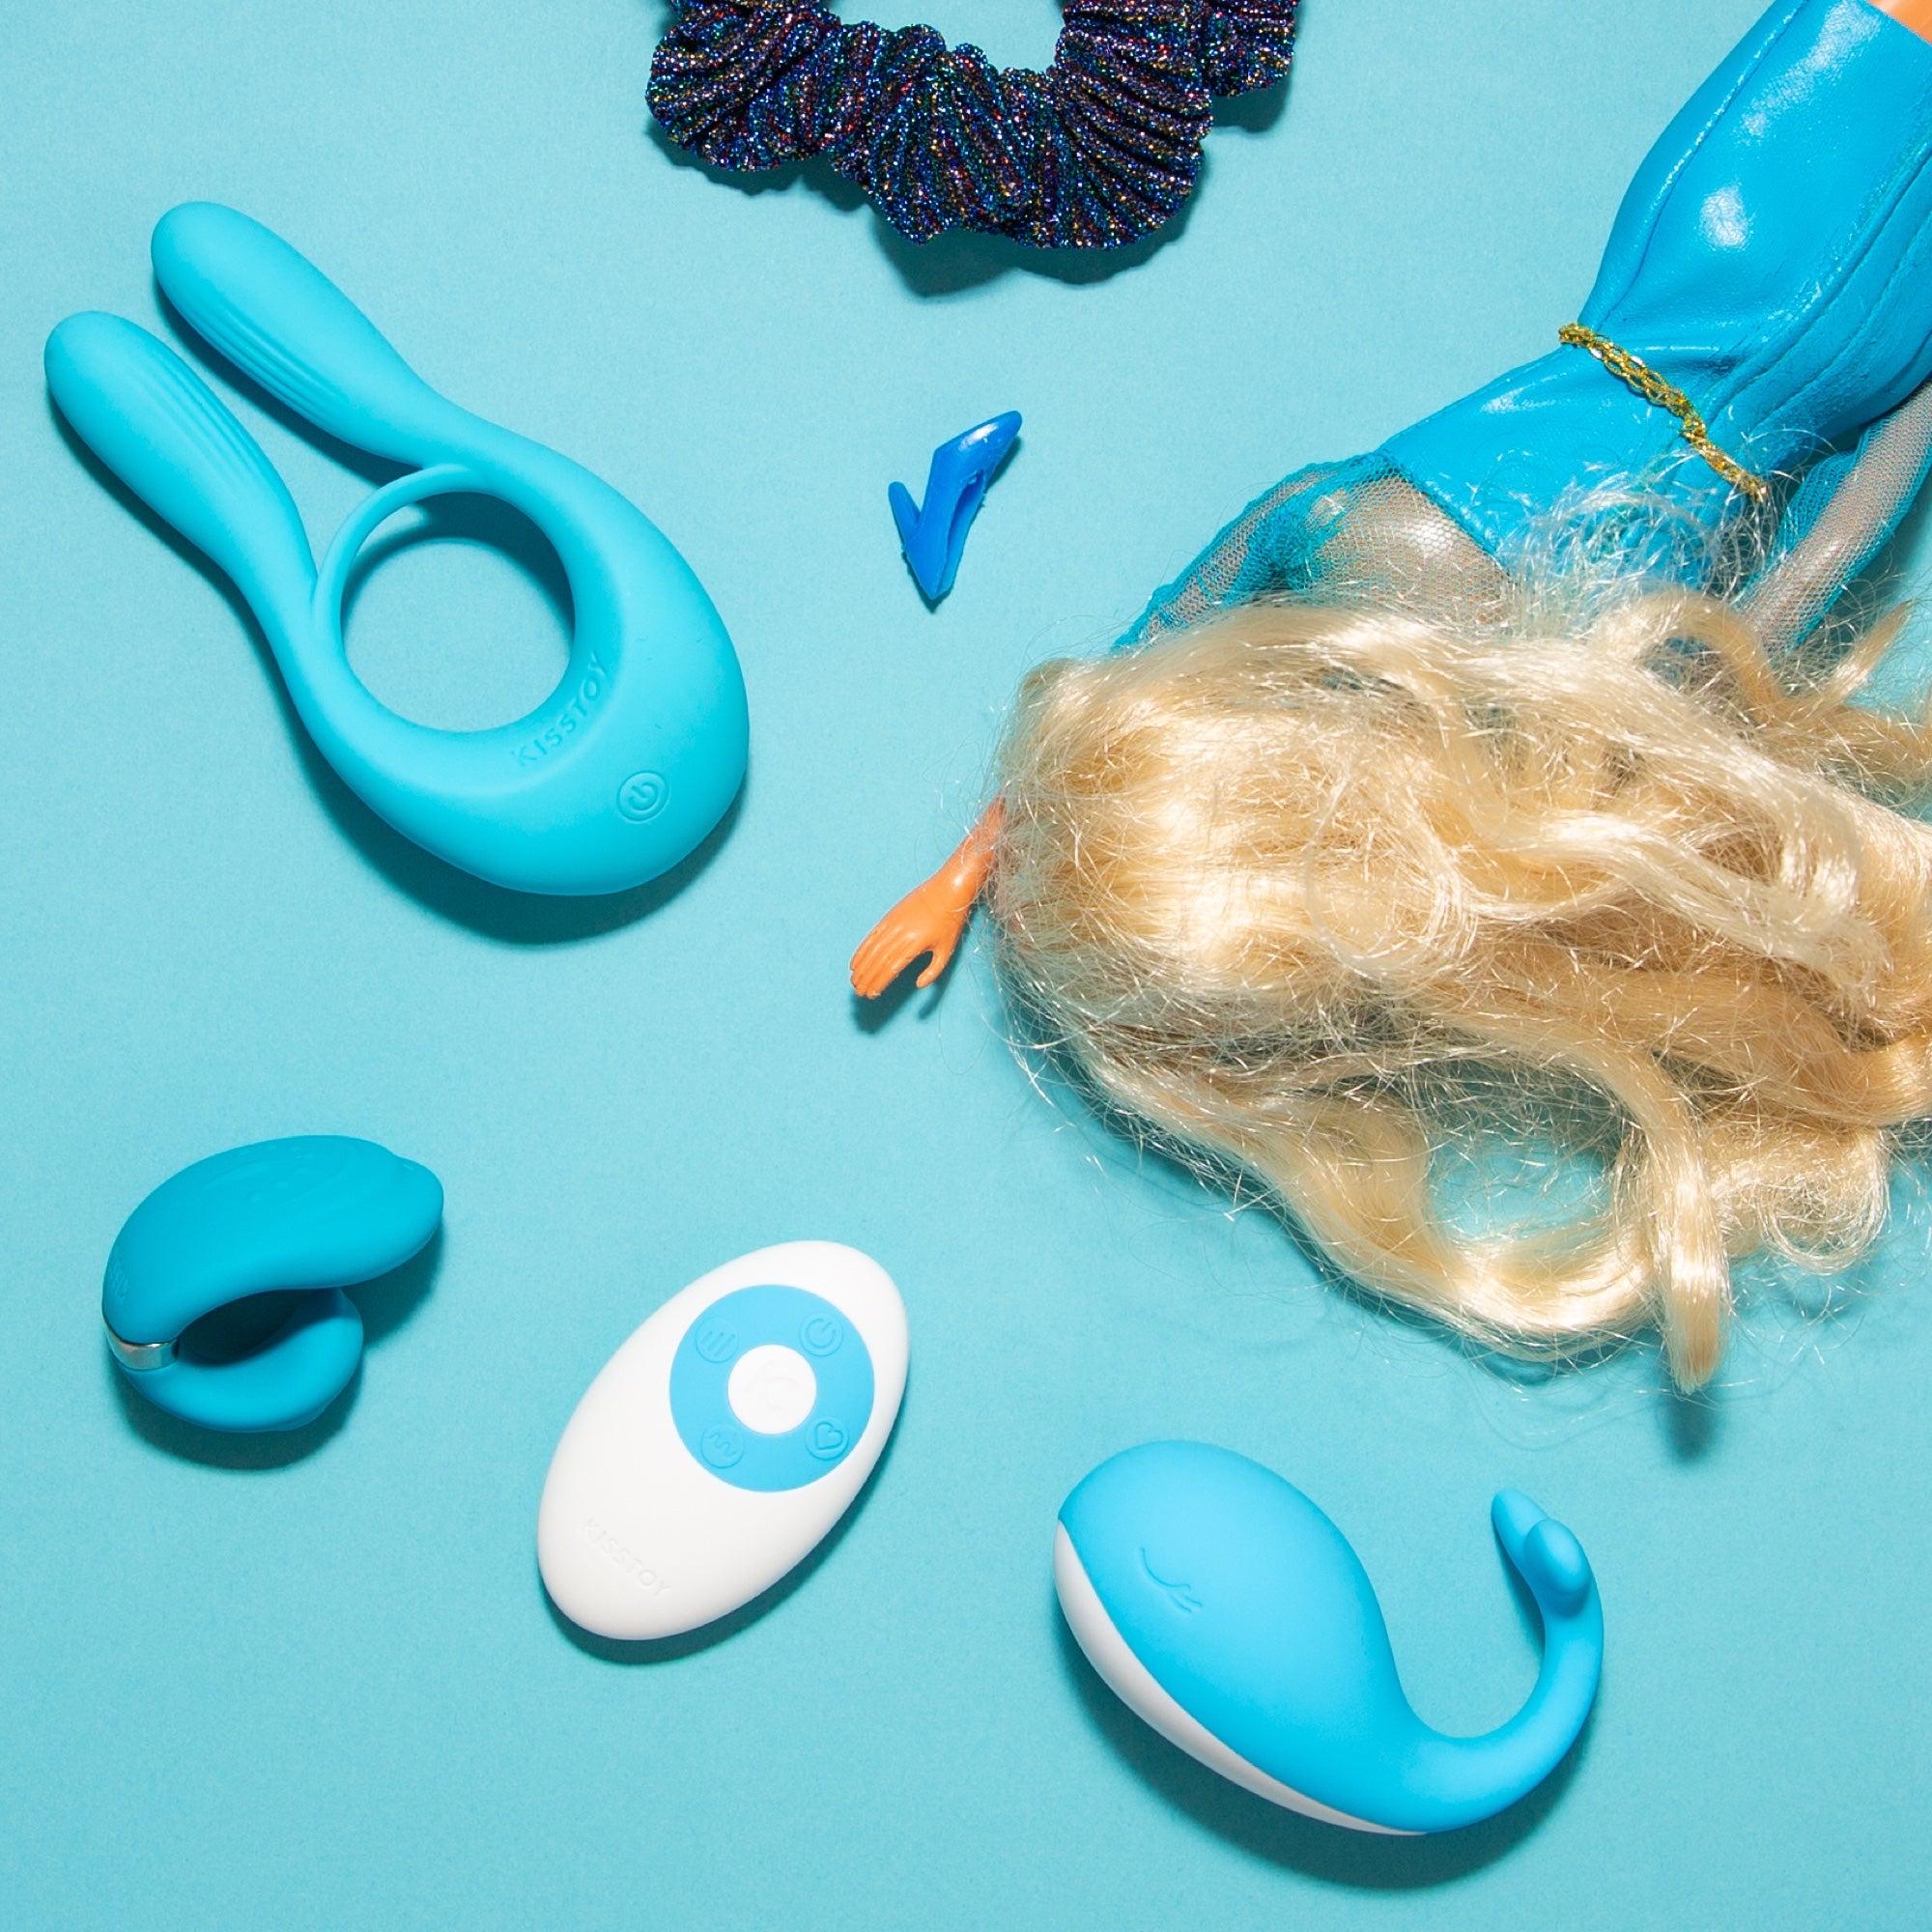 Auf einem blauen Hintergrund sind blaue Sextoys präsentiert. Gute Produktfotos sind wichtig um Sexspielzeug zu verkaufen.